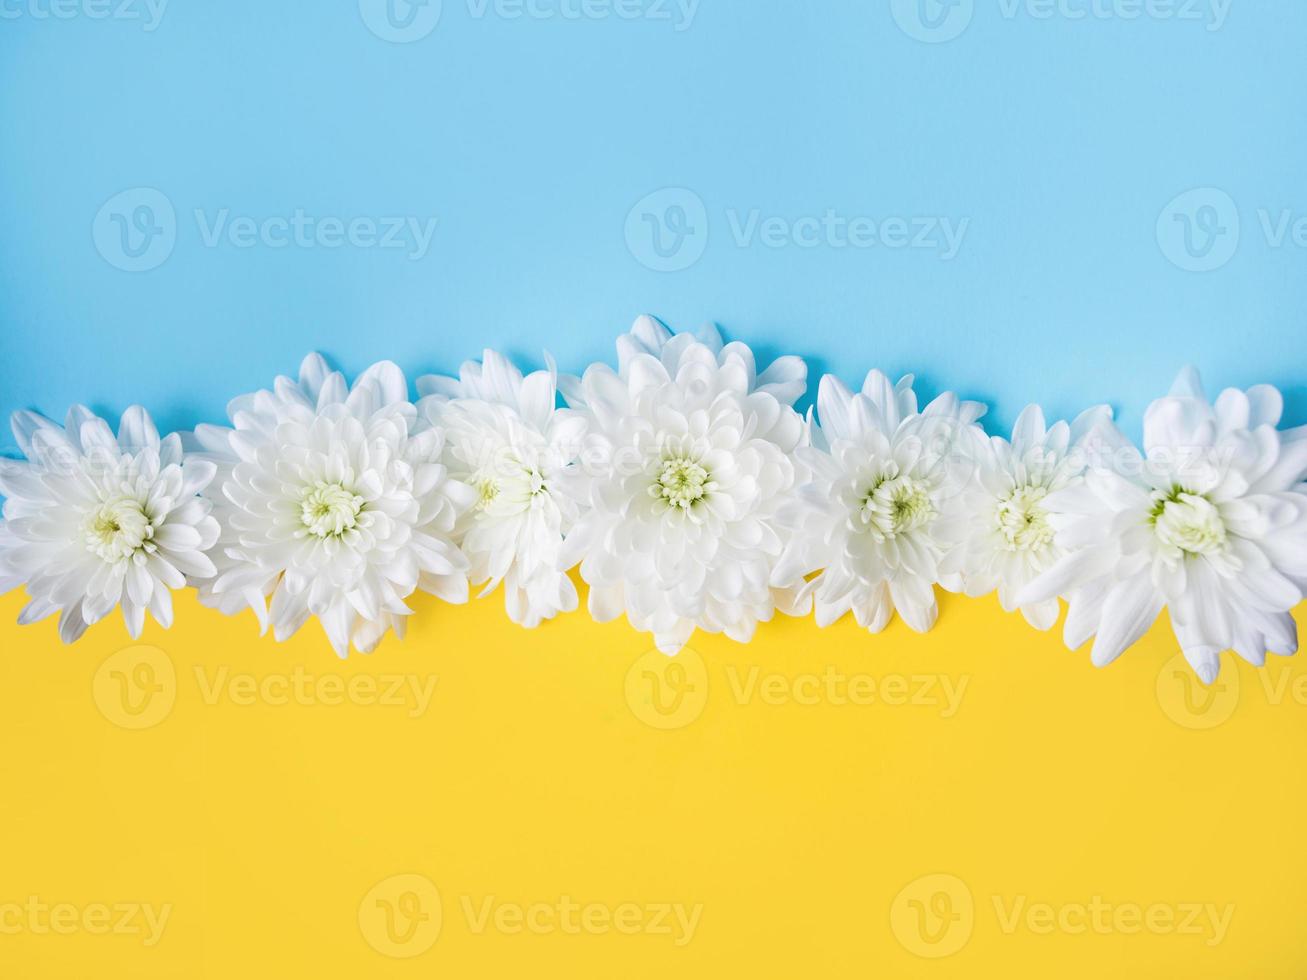 fondo azul y amarillo con flores blancas. apoyar a ucrania foto